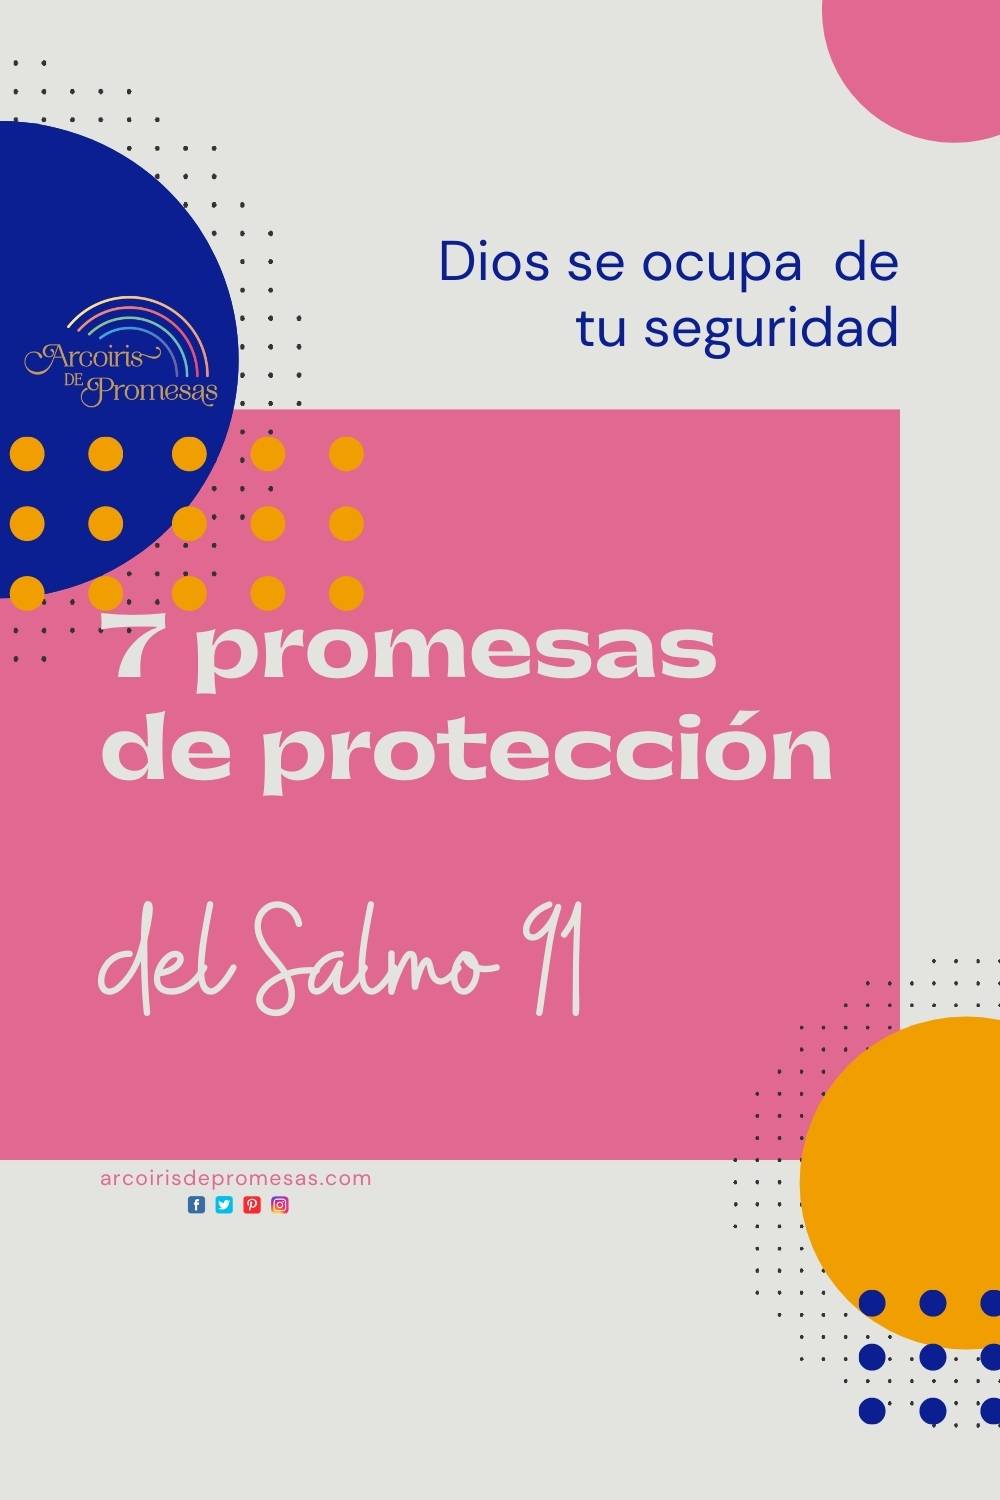 7 promesas d proteccion del salmo 91 promesas de dios para la mujer cristiana